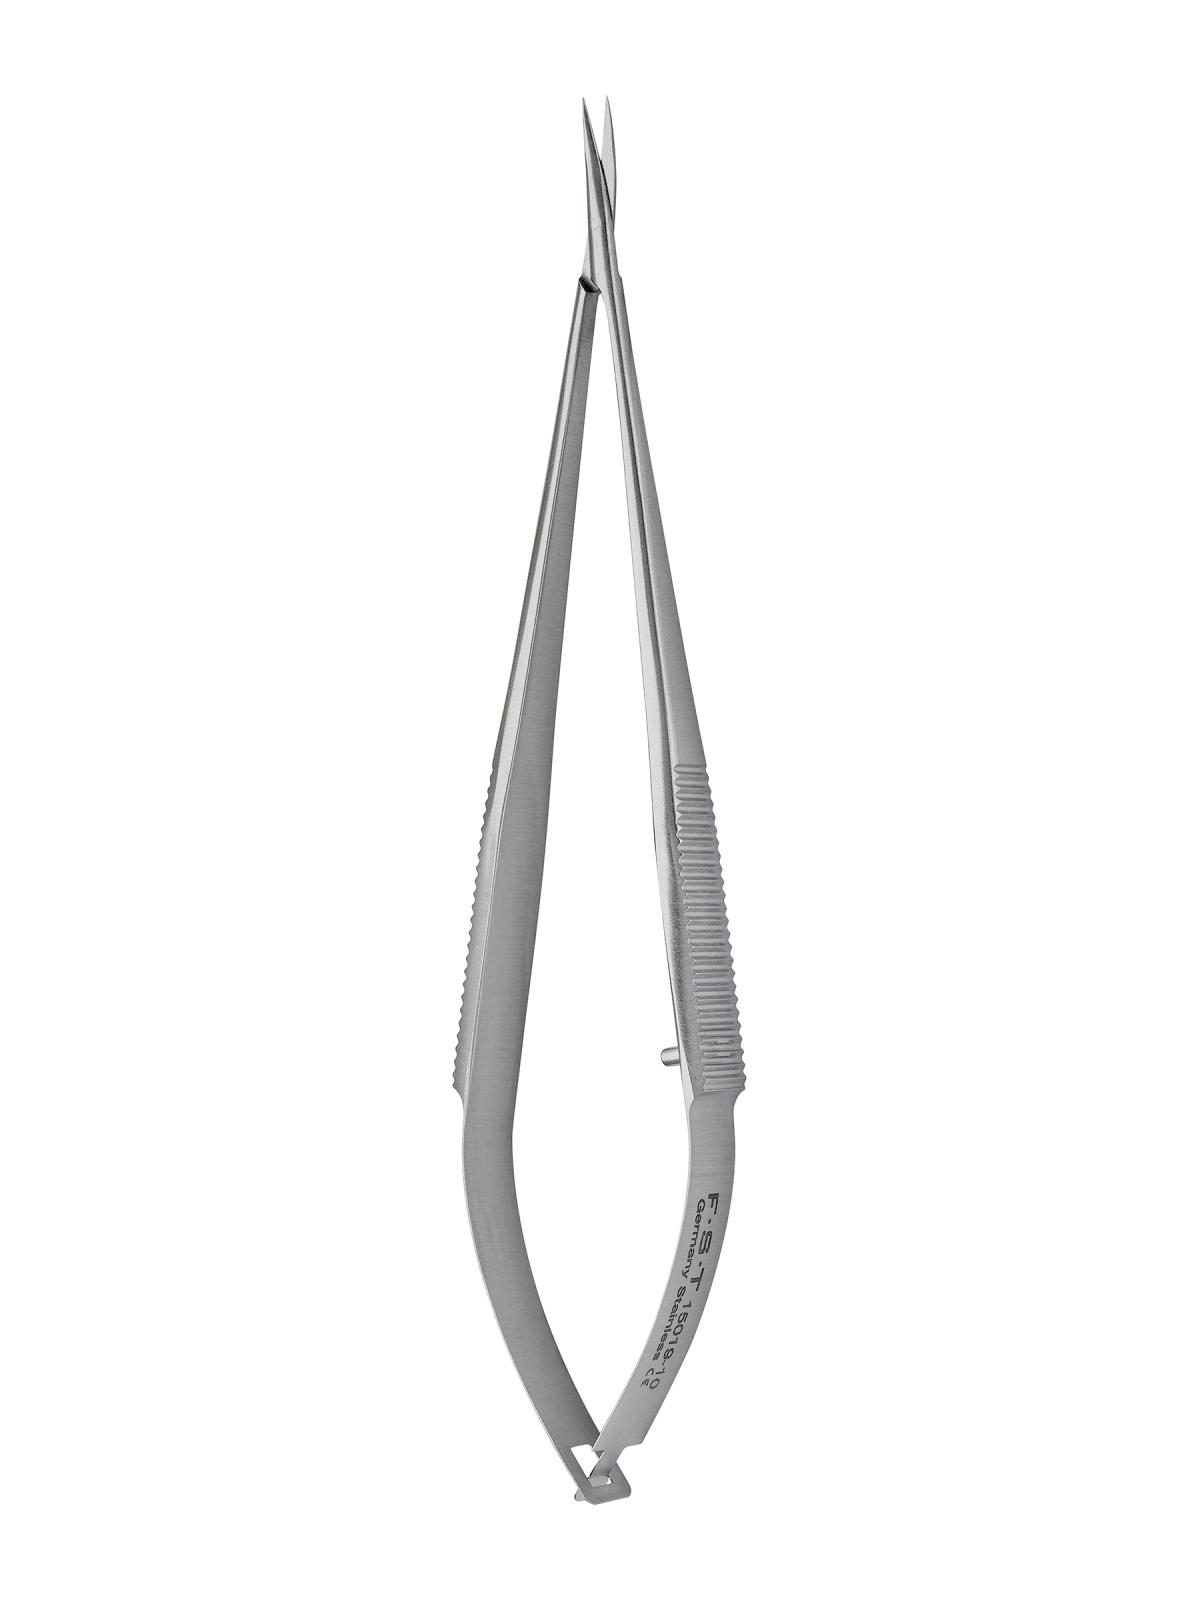 Fine Science Tools Student Vannas Spring Scissors, Curved, 9 cm